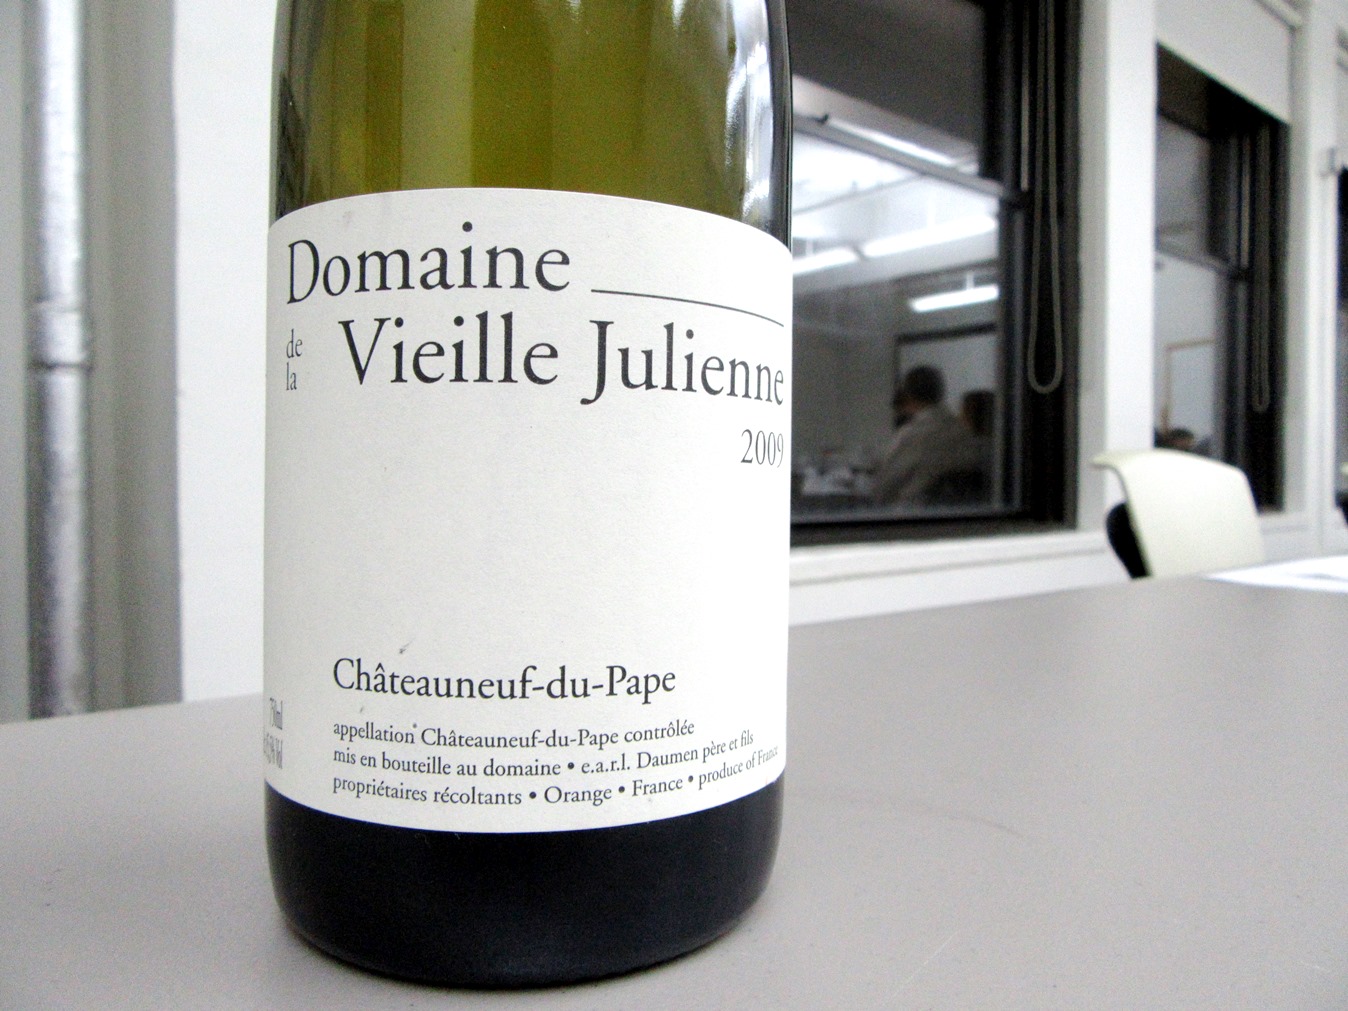 Domaine de la Vieille Julienne, Chateauneuf-du-Pape 2009, Rhone, France, Wine Casual